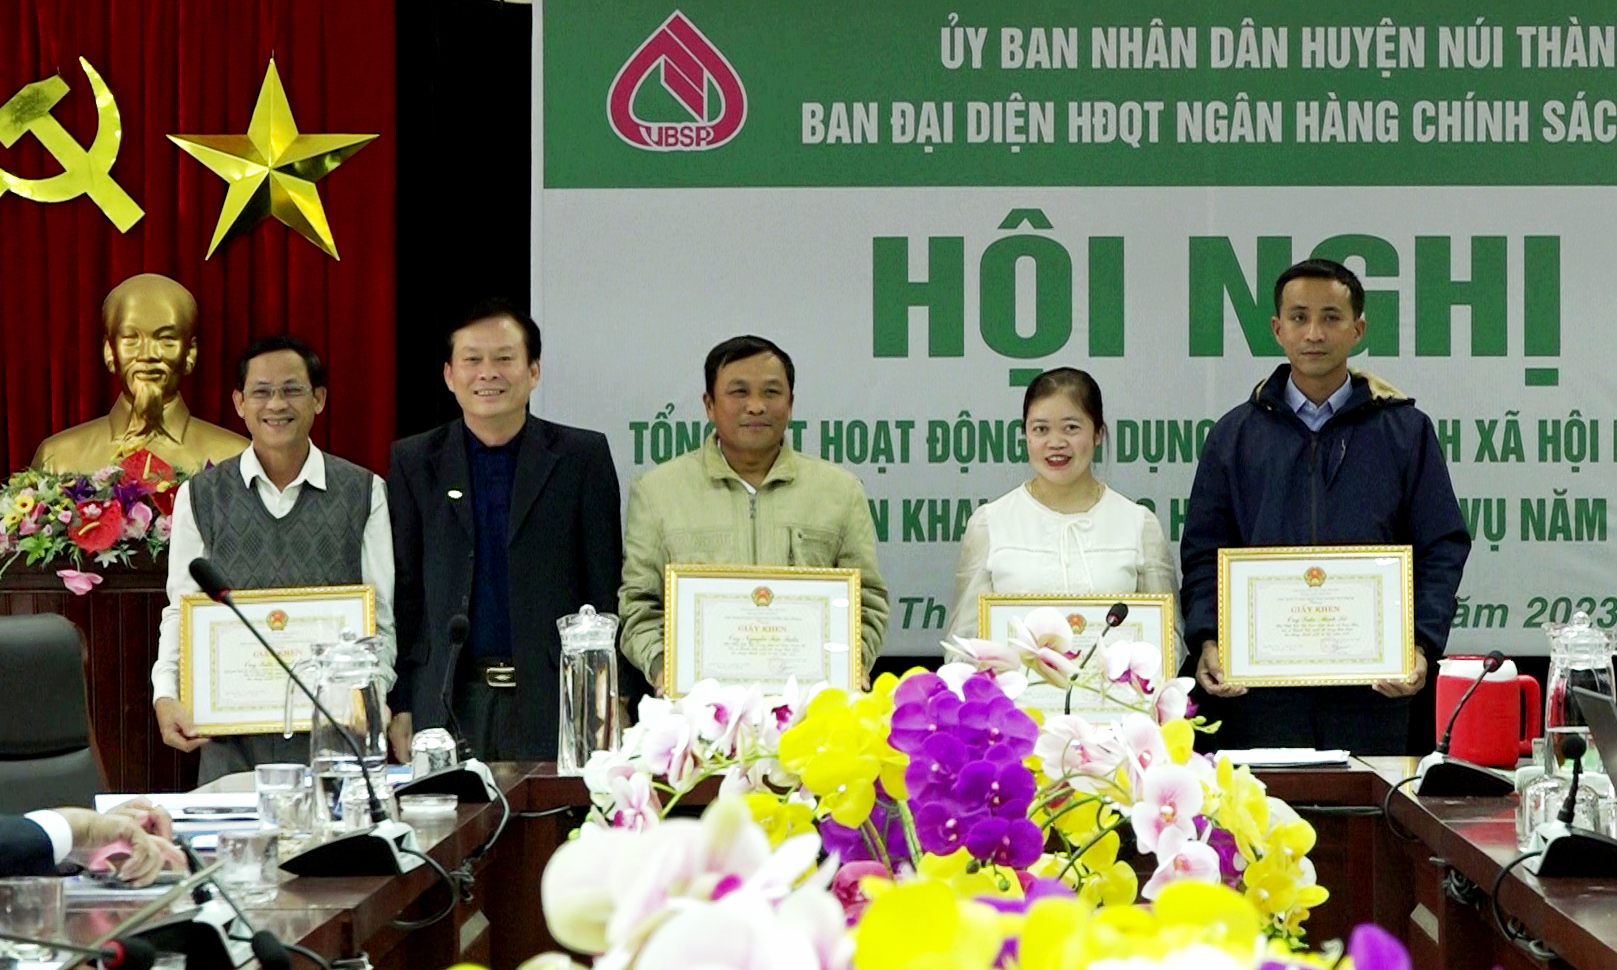 Bam đại diện HĐQT Ngân hàng CSXH Núi Thành khen thưởng cá nhân, tập thể có thành tích xuất sắc trong năm 2022. Ảnh: V.P